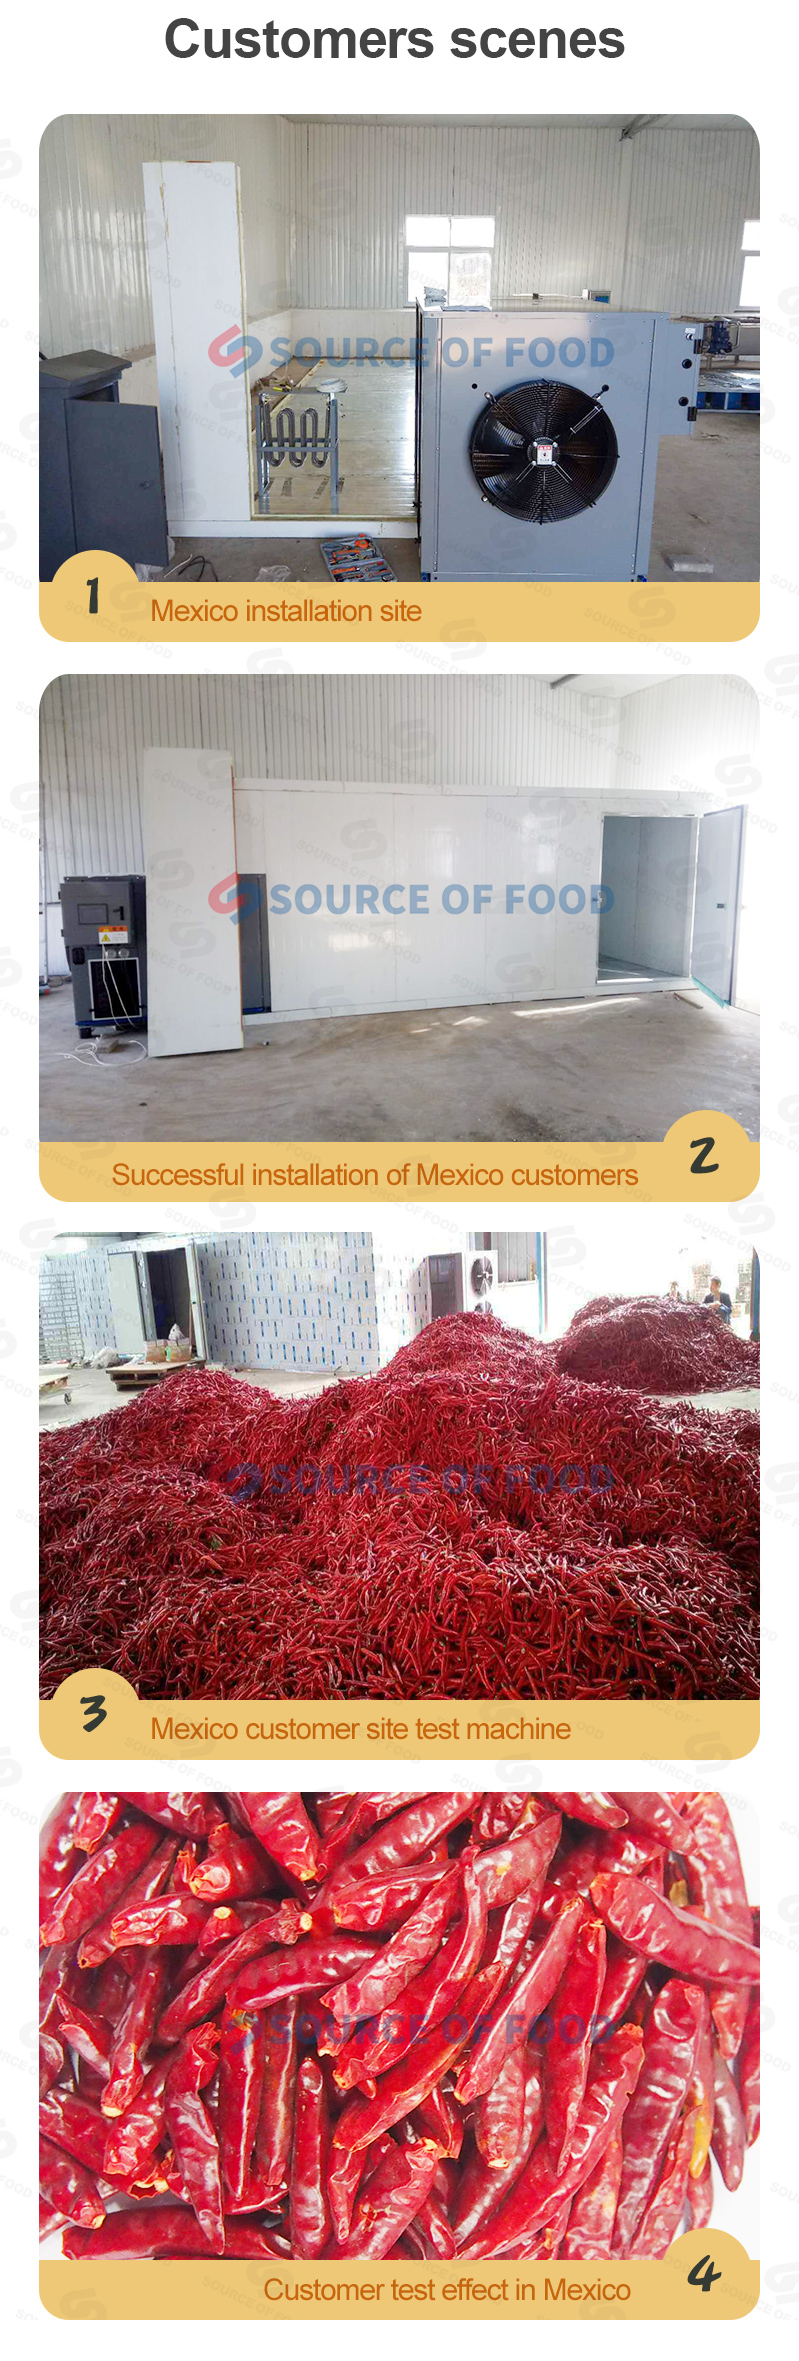 red chilli drying machine india